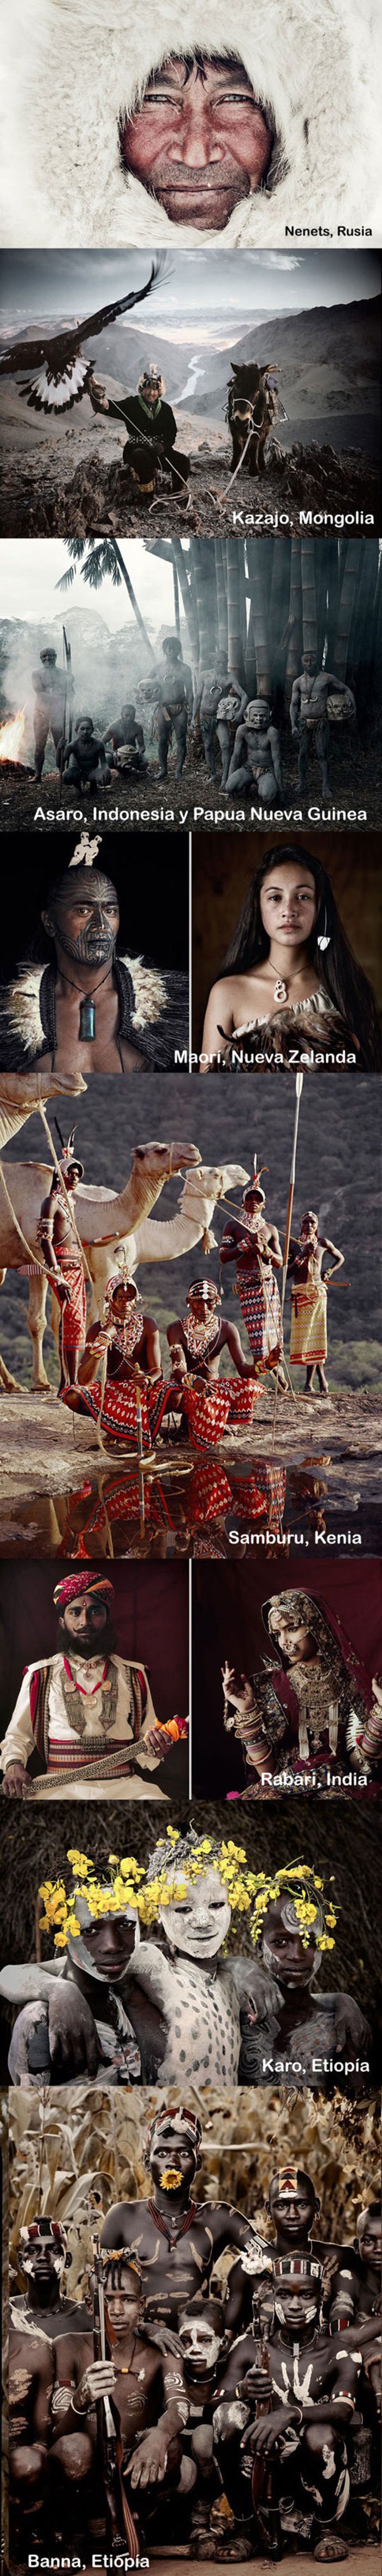 Fotografije plemena iz različitih dijelova svijeta dokaz su da je svijet čarobno i divno mjesto